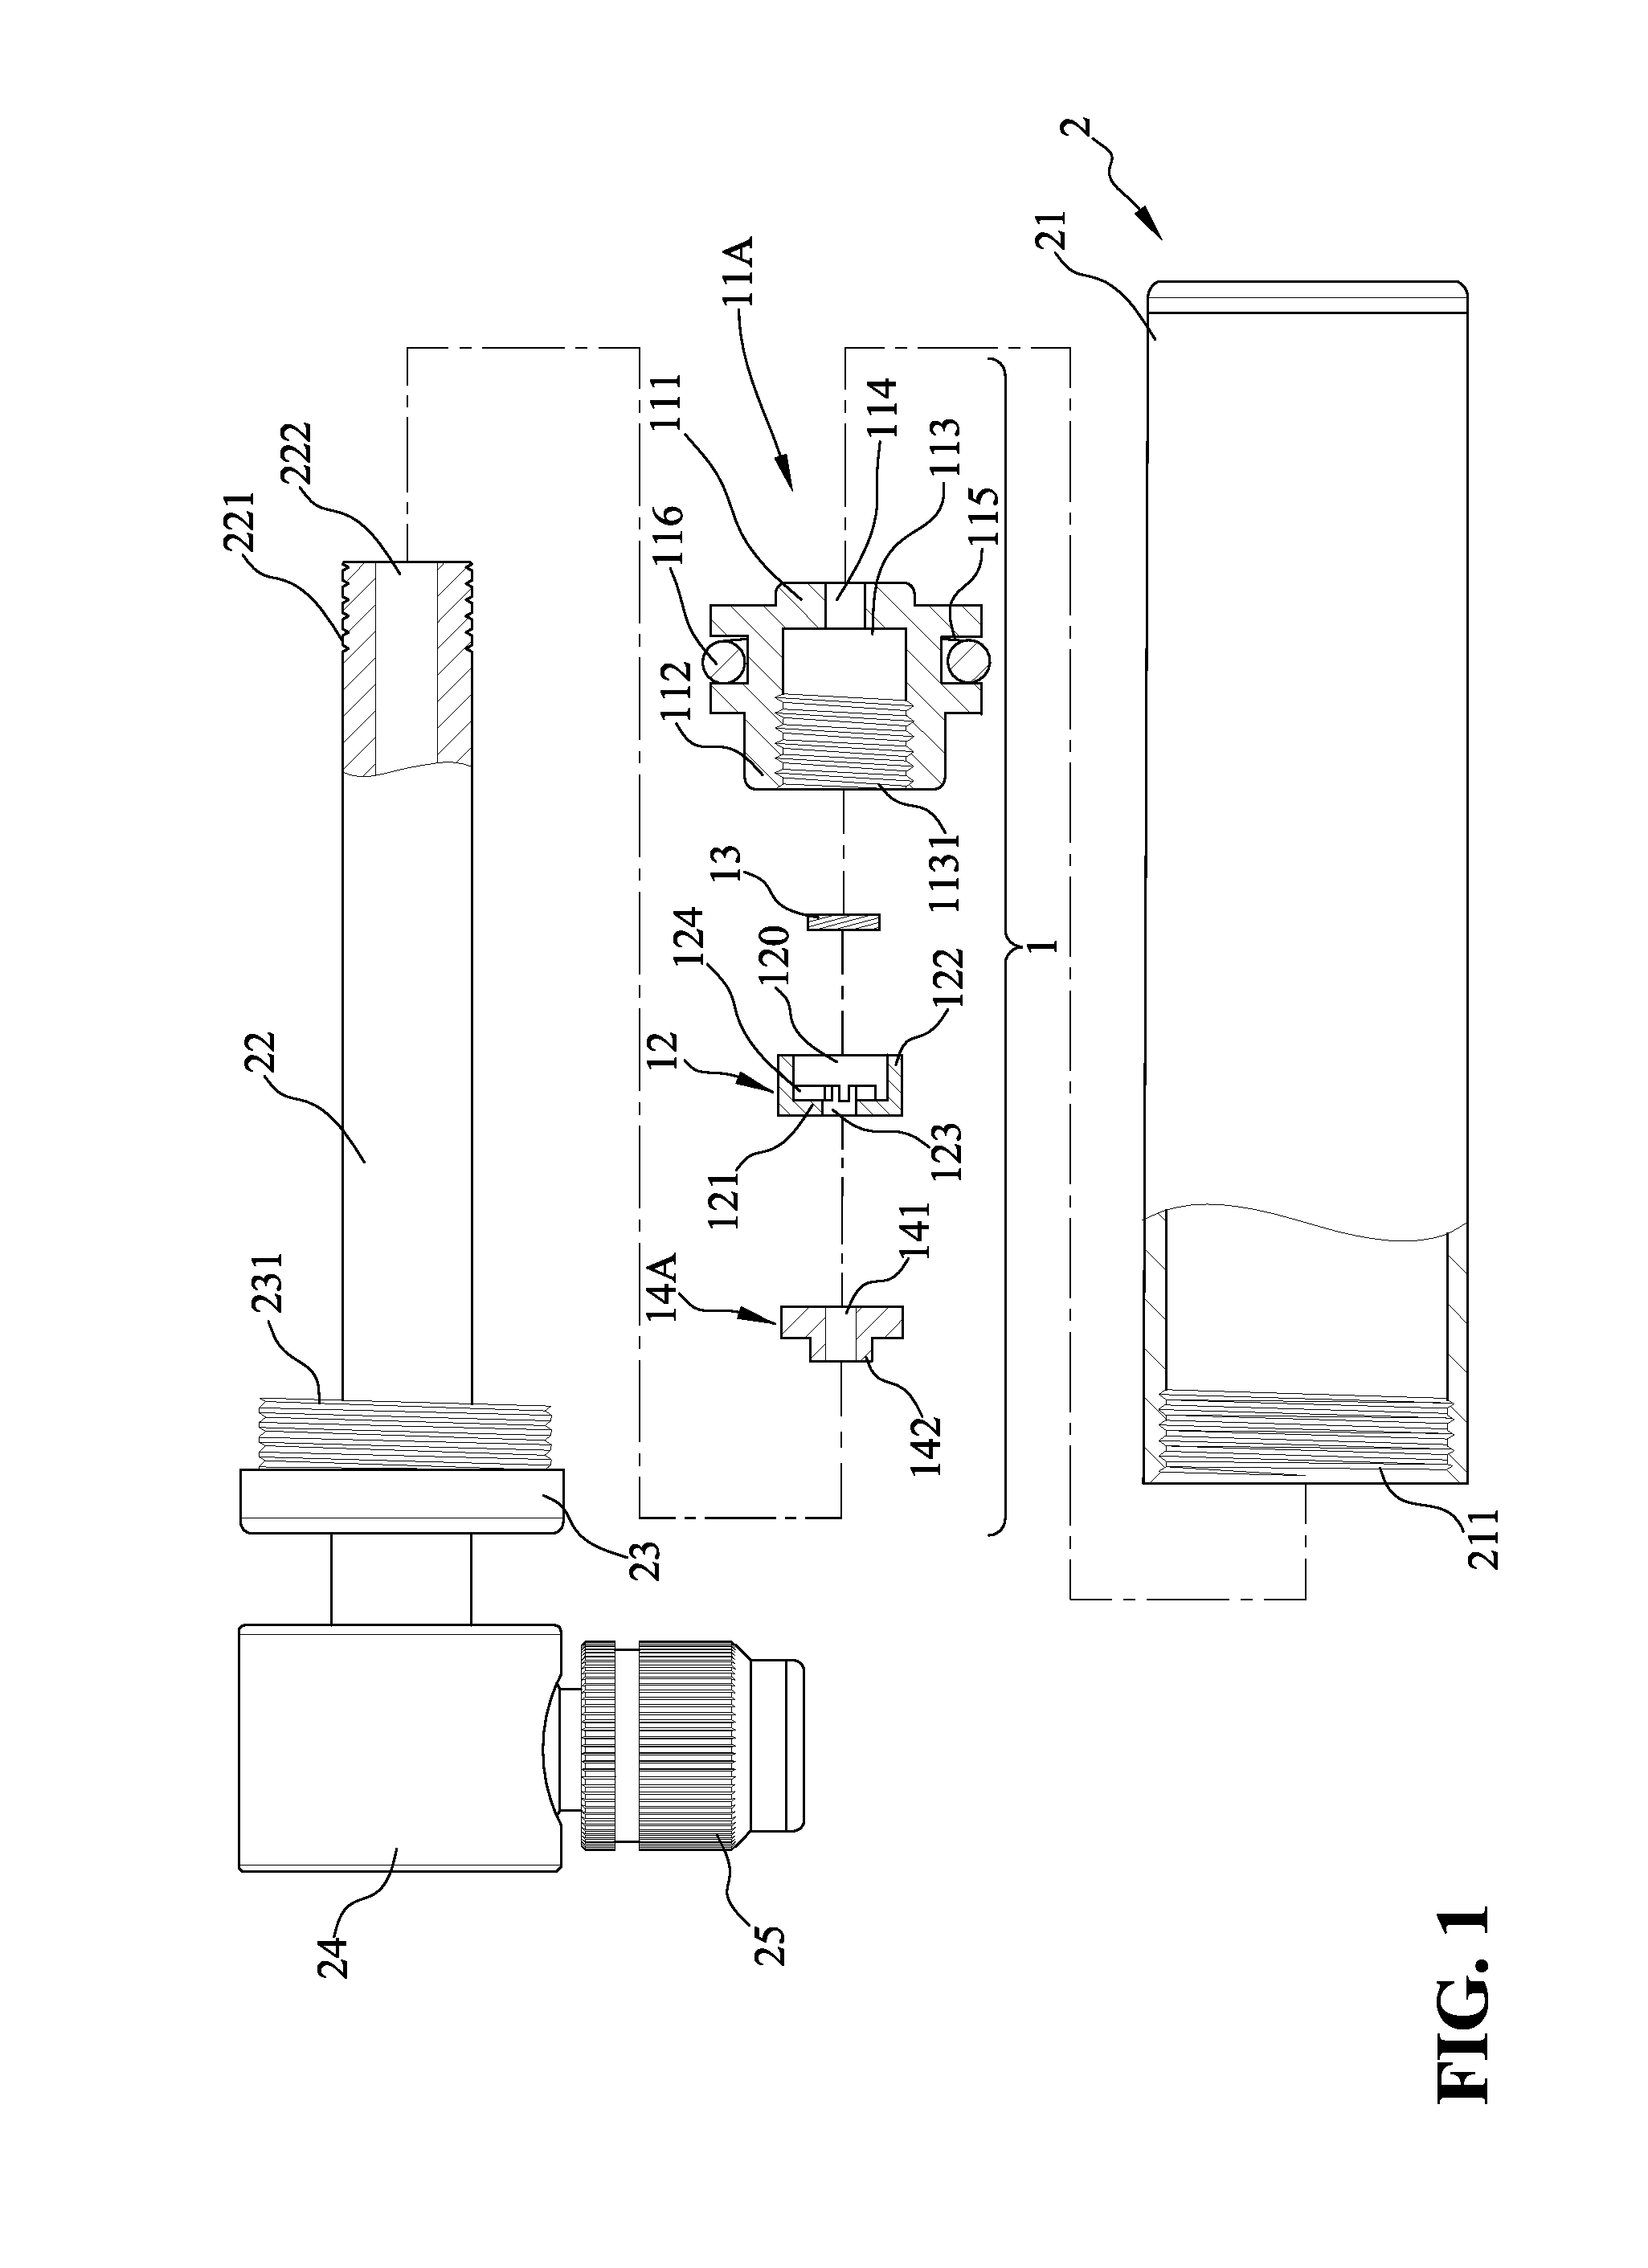 One-way valve assembly